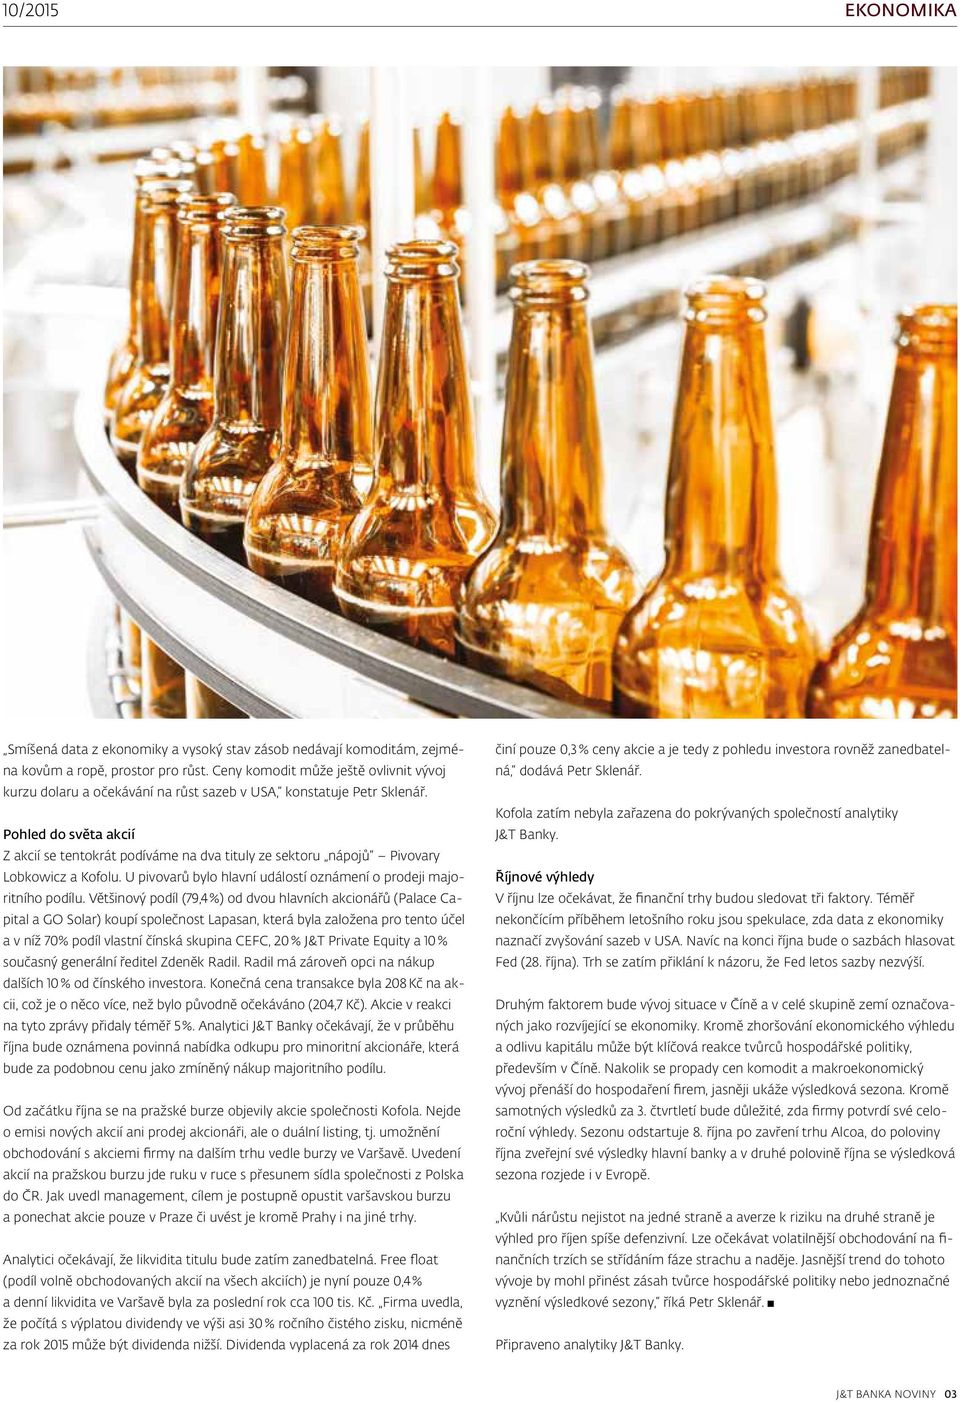 Pohled do světa akcií Z akcií se tentokrát podíváme na dva tituly ze sektoru nápojů Pivovary Lobkowicz a Kofolu. U pivovarů bylo hlavní událostí oznámení o prodeji majoritního podílu.